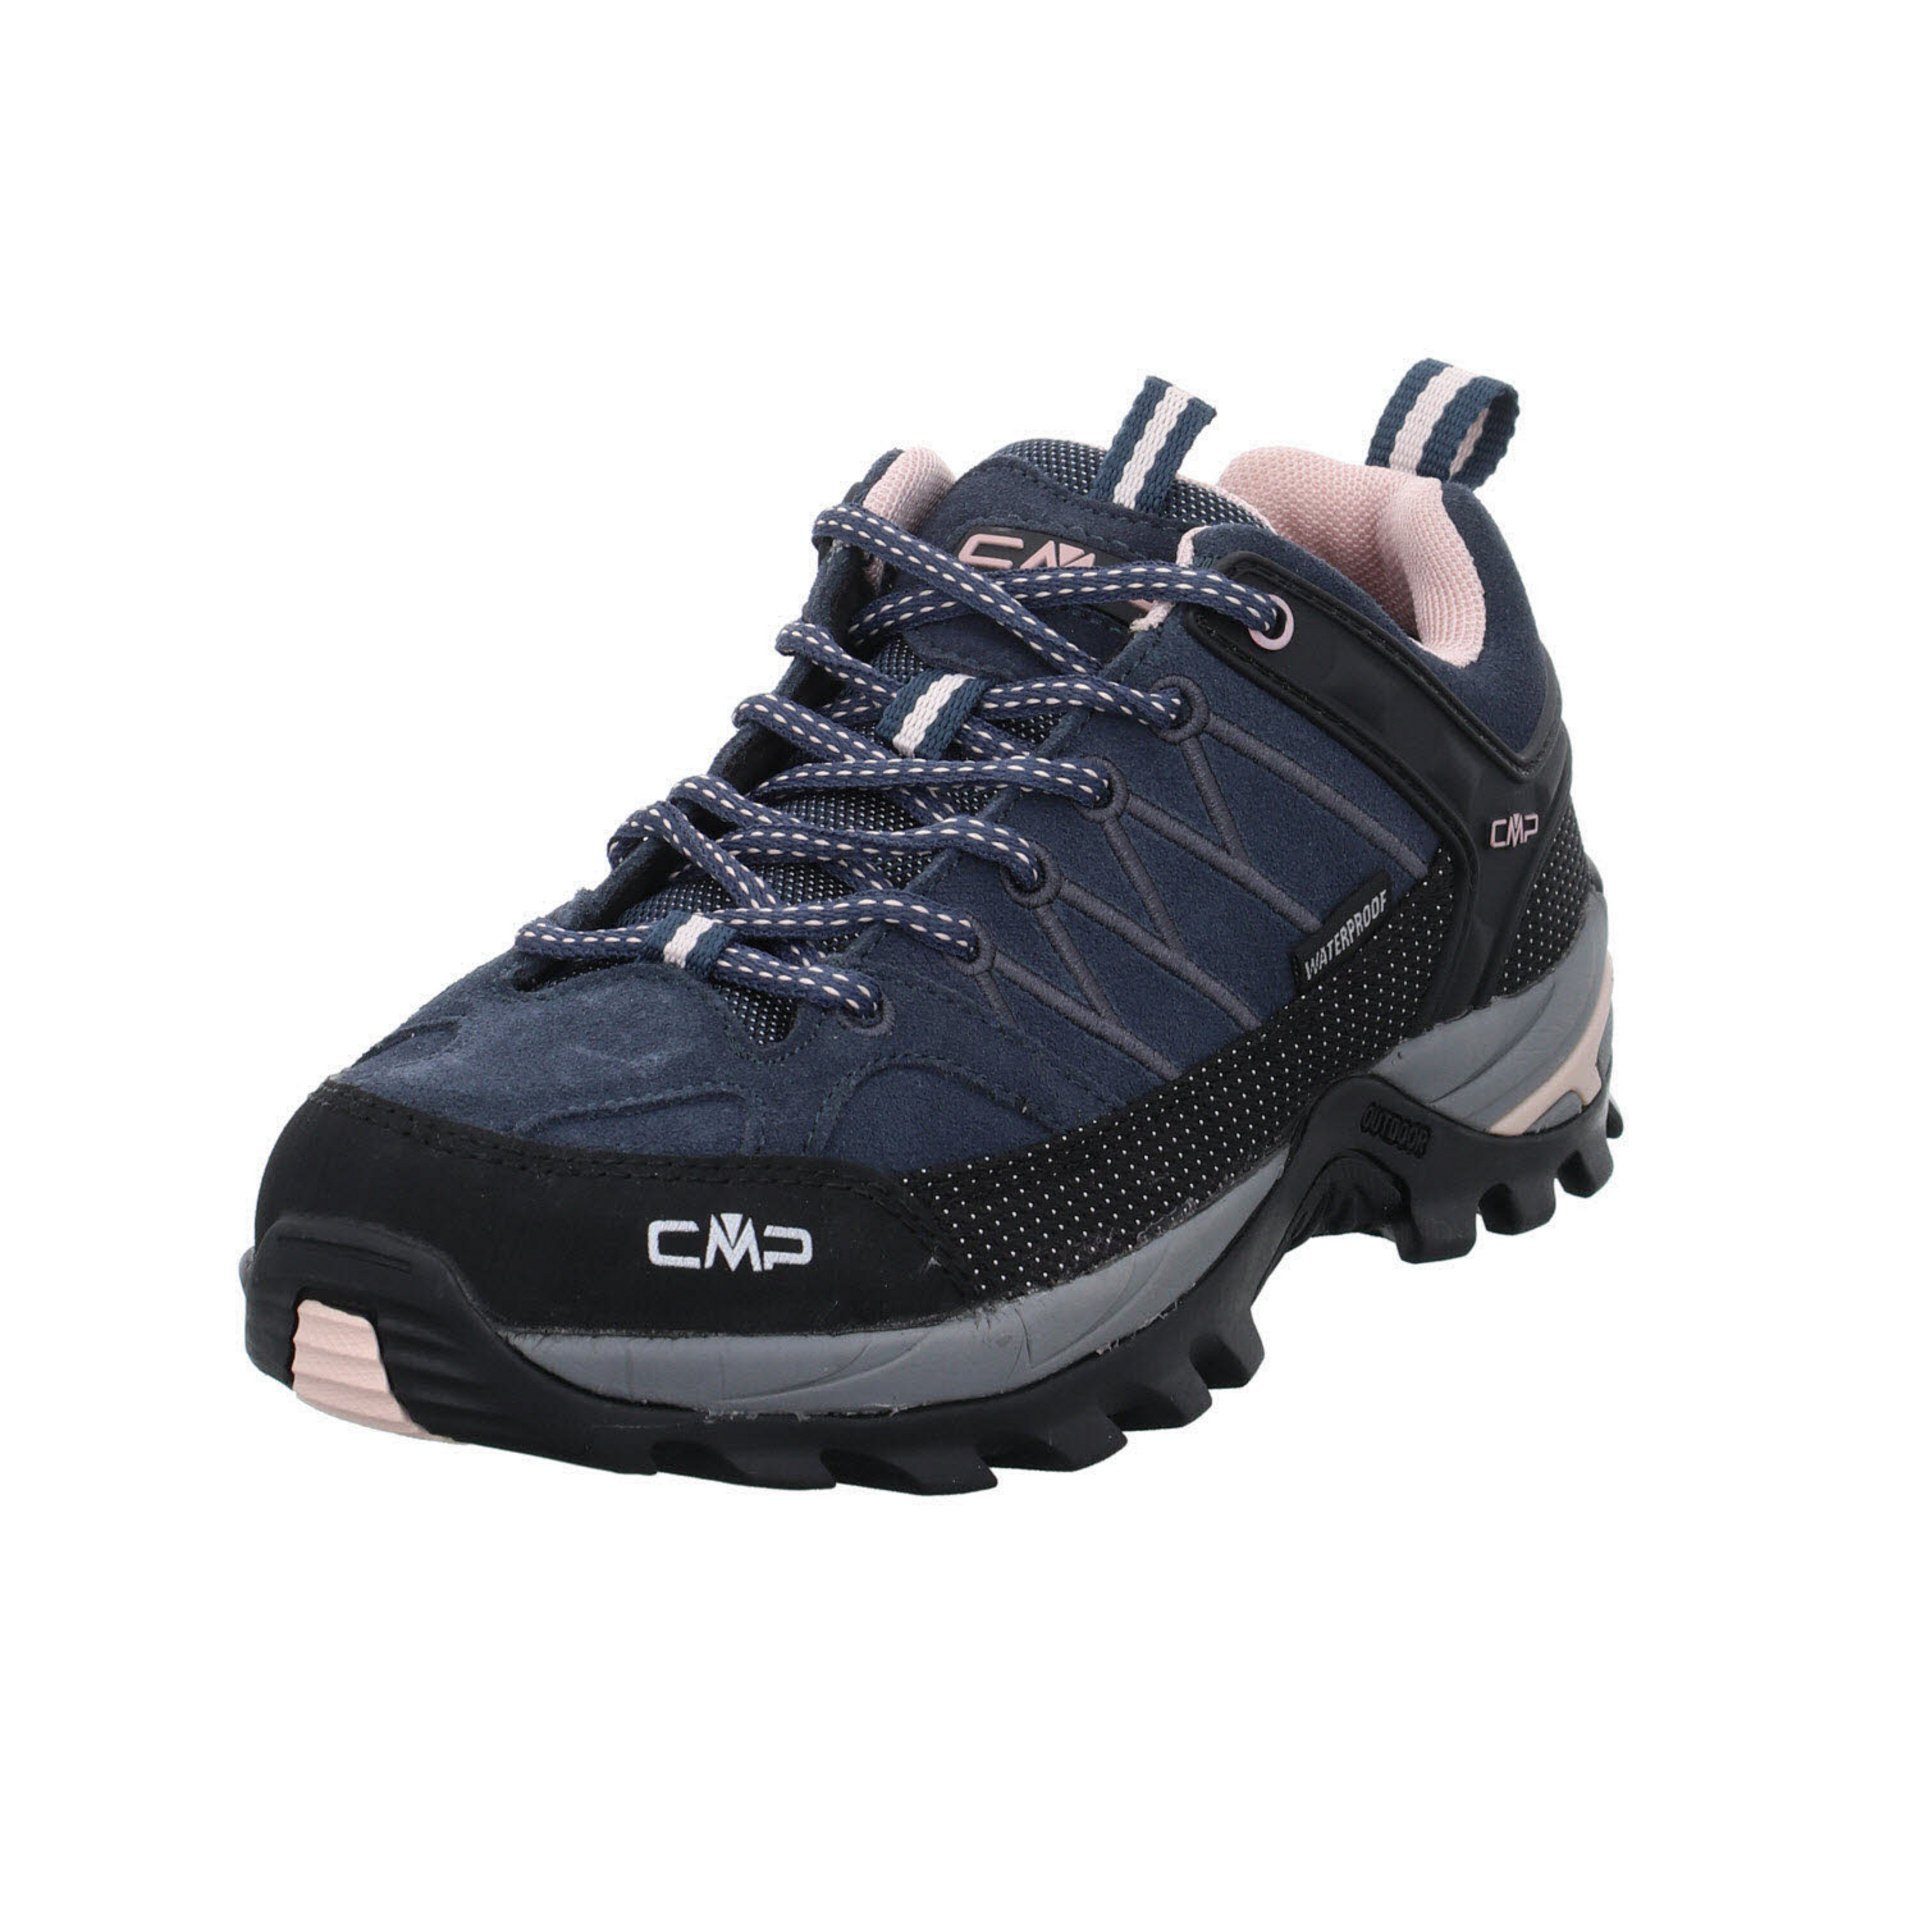 CMP Damen Schuhe Outdoor Riegel Low Outdoorschuh Outdoorschuh Leder-/Textilkombination asphalt-antracite-rose | 